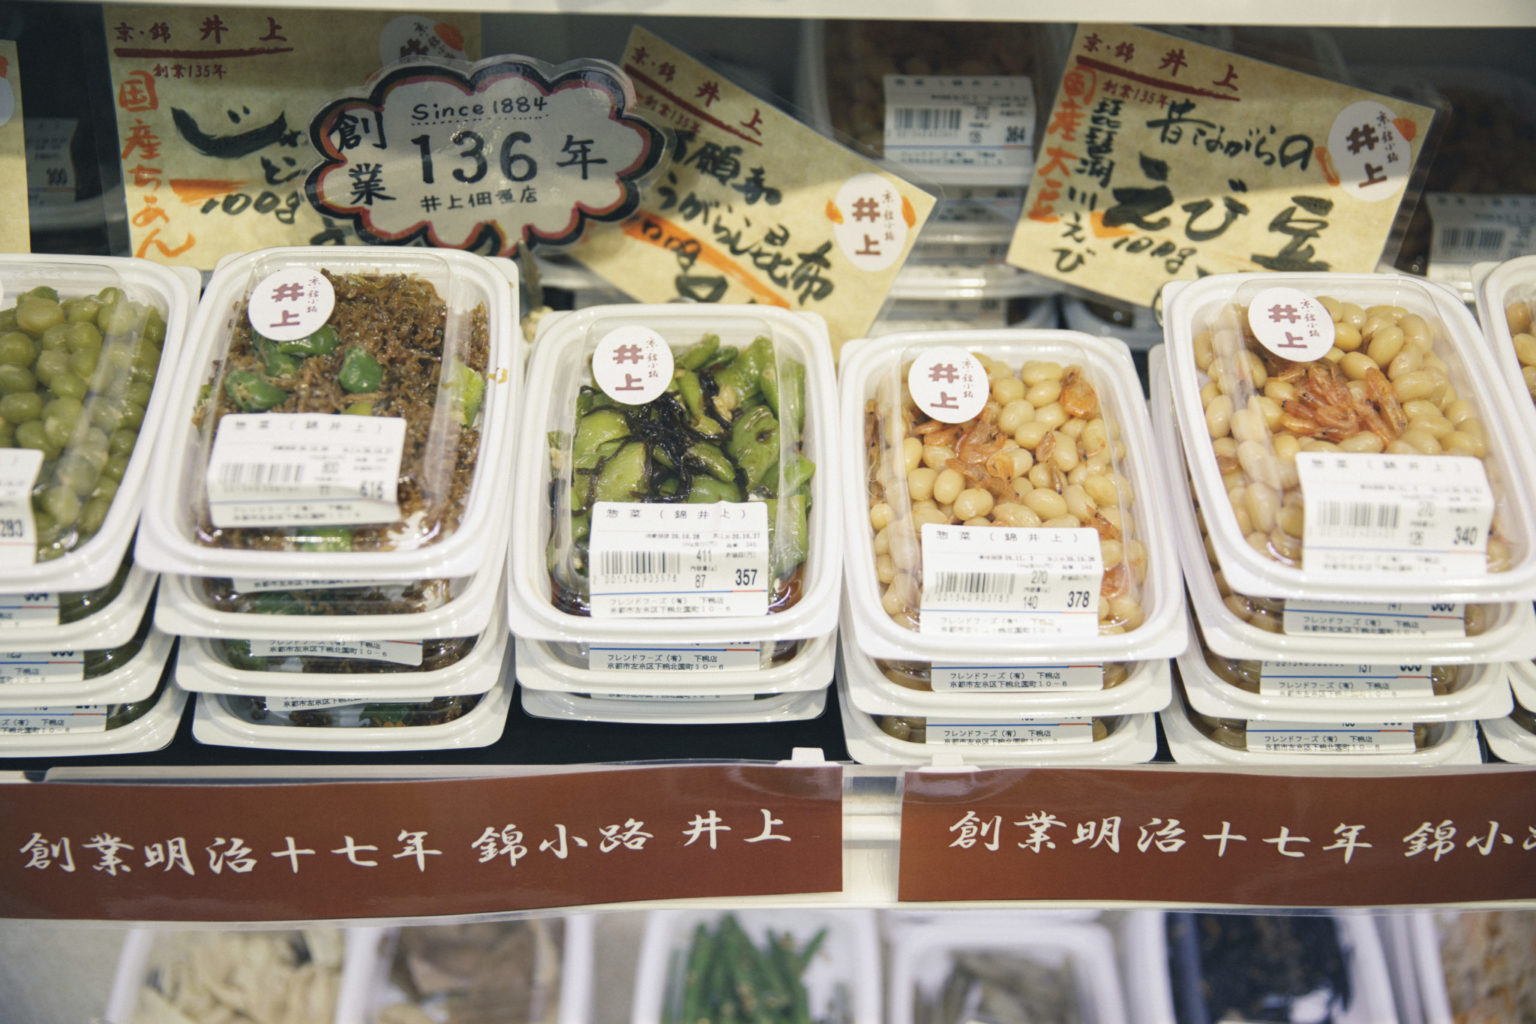 2019年末に閉店した錦市場の惣菜店〈錦小路井上〉の味が途絶えるのは惜しいと、再販売にこぎつけた惣菜も並ぶ。